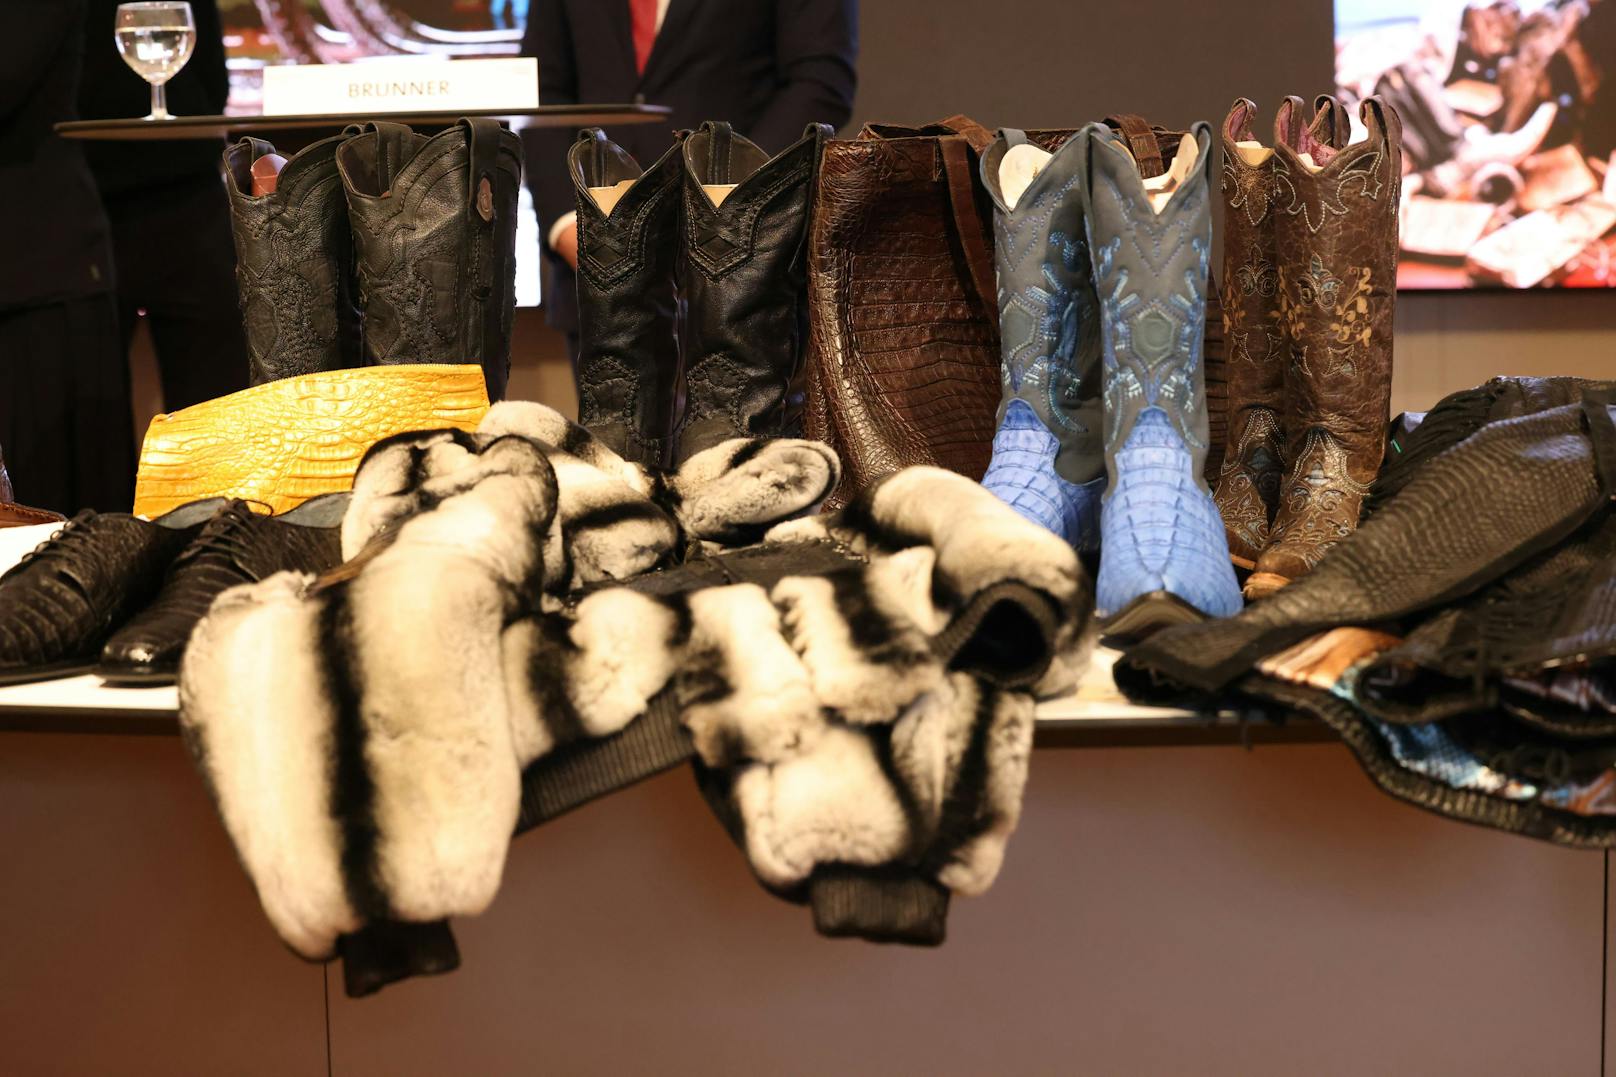 Zu den illegalen Waren zählen vor allem Lederprodukte, etwa von Phytons oder Krokodilen.